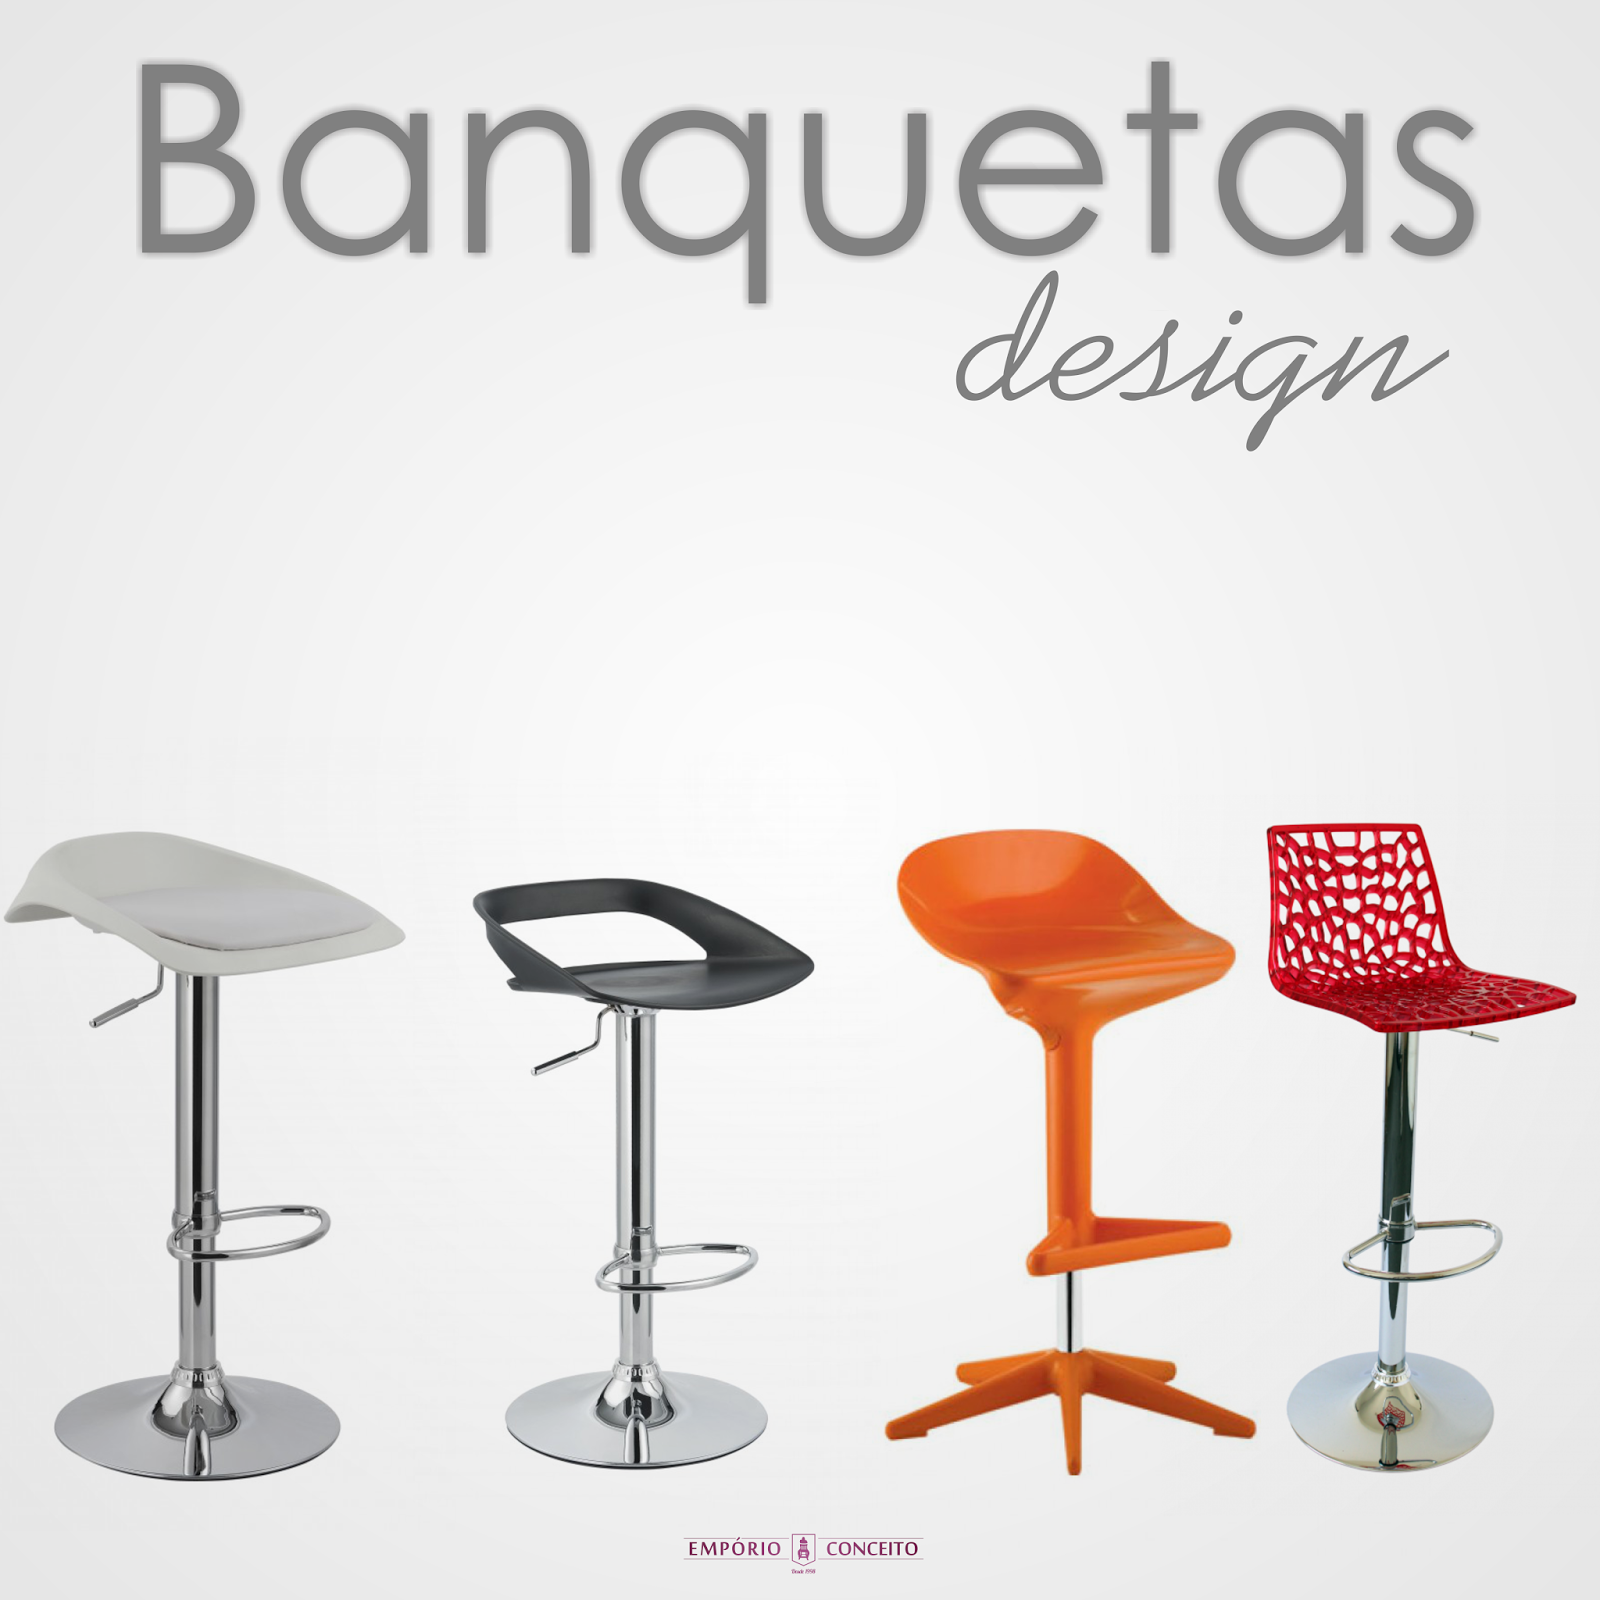 http://www.emporioconceito.com.br/bancos/banquetas/banquetas-design.html